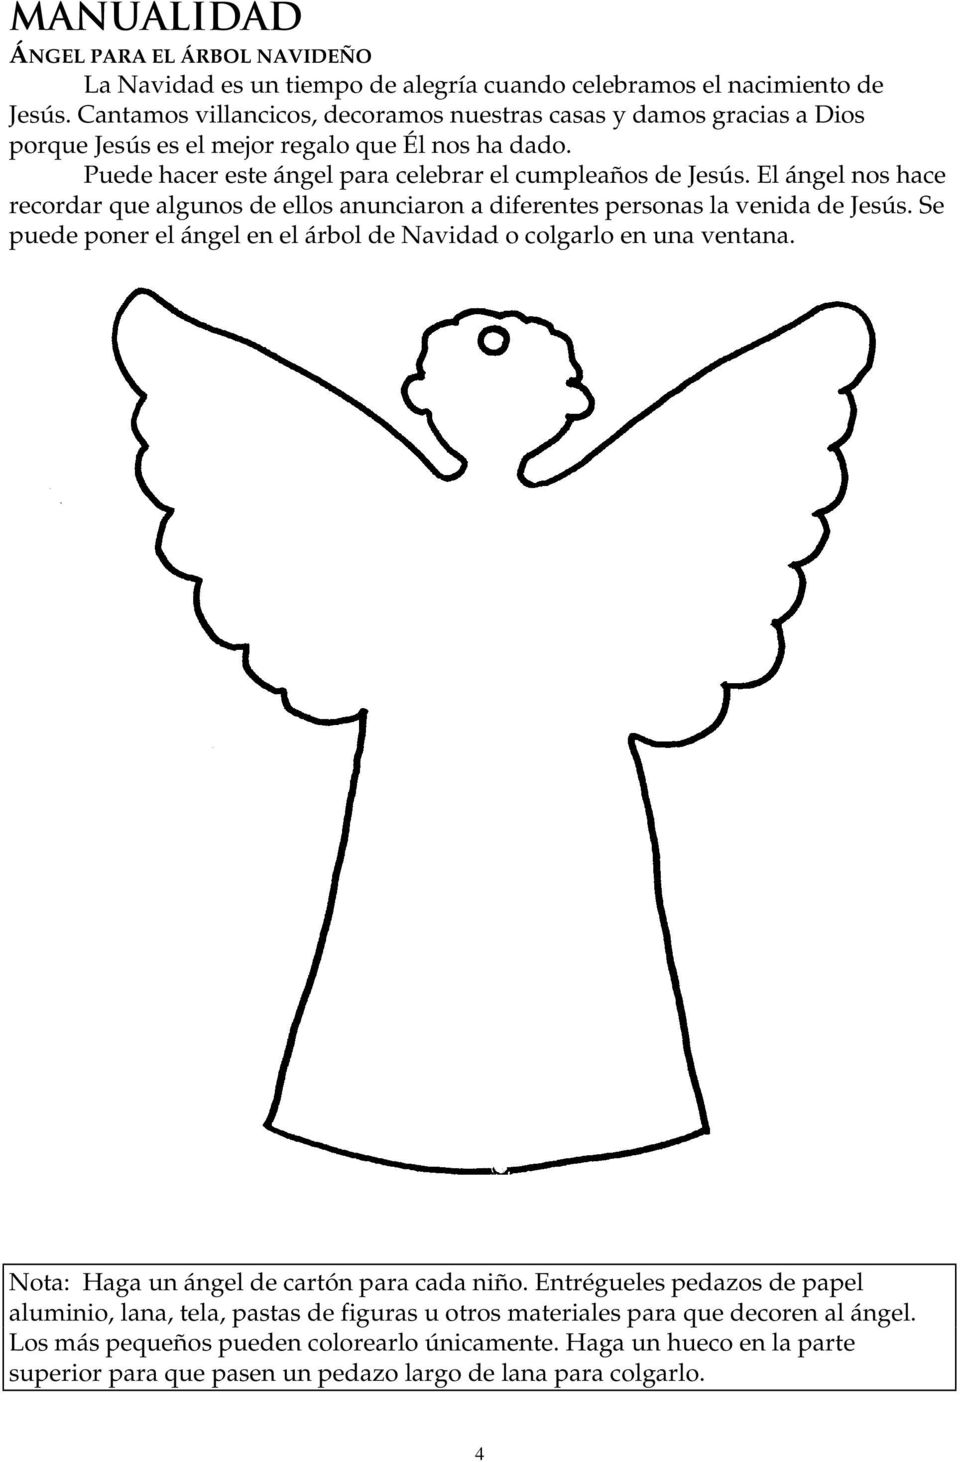 El ángel nos hace recordar que algunos de ellos anunciaron a diferentes personas la venida de Jesús. Se puede poner el ángel en el árbol de Navidad o colgarlo en una ventana.